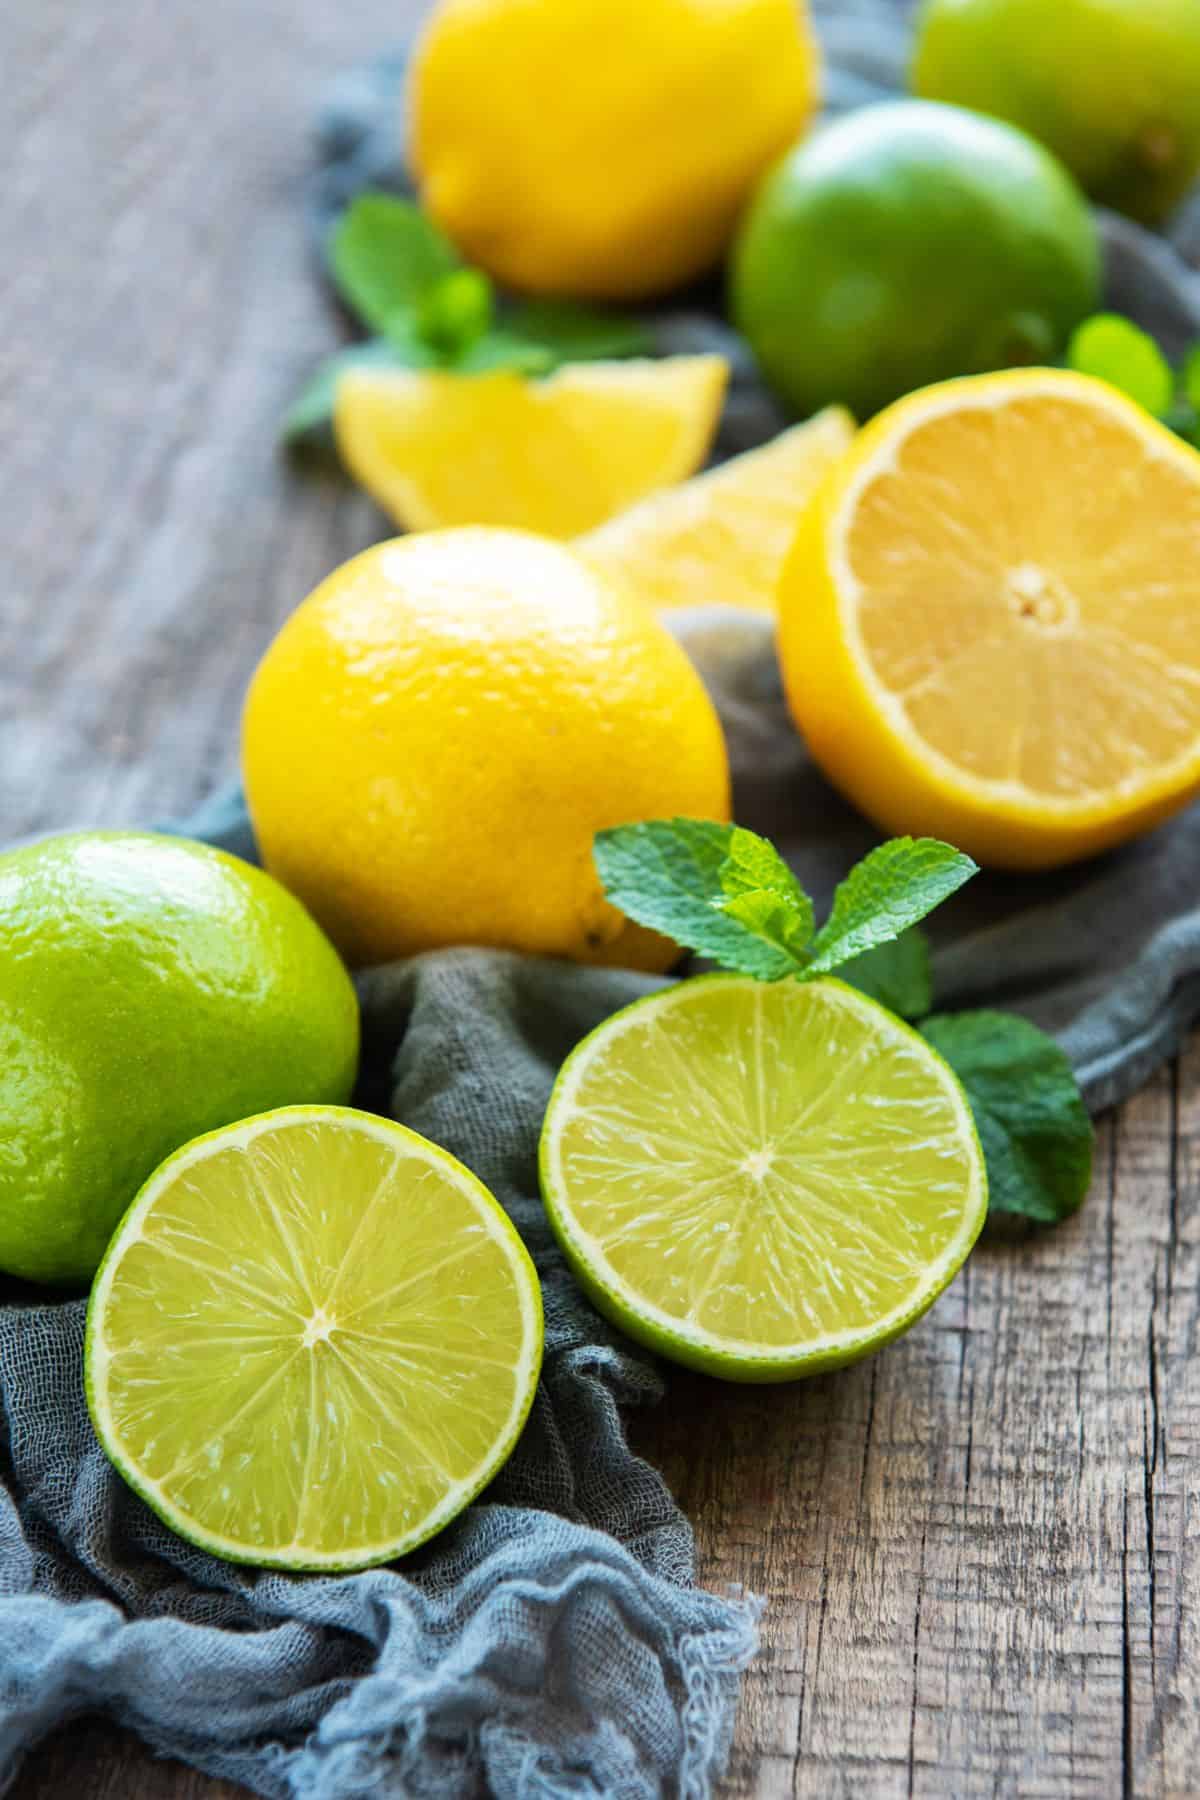 Lemons and limes on a table.